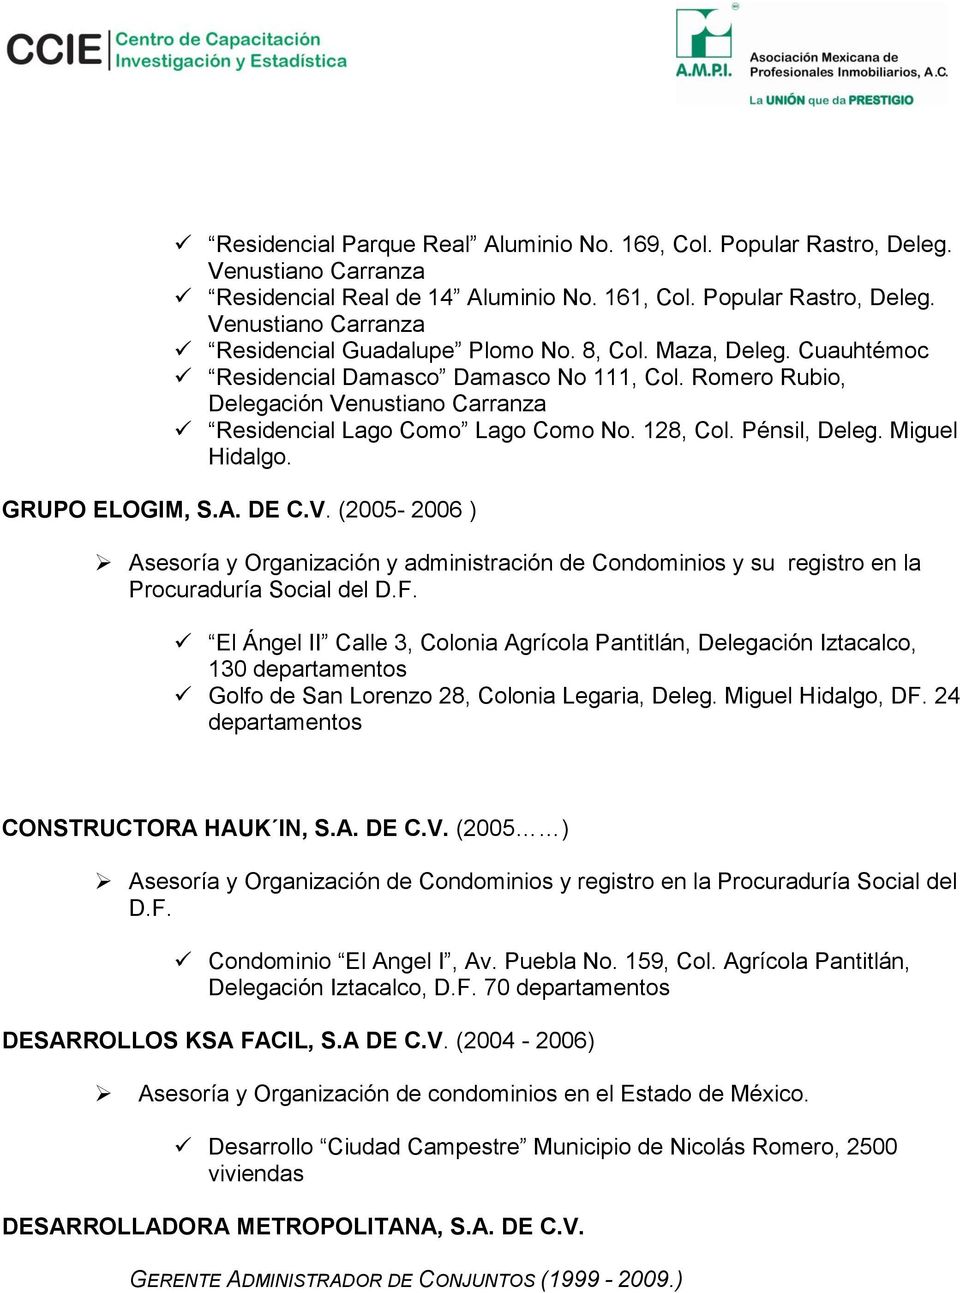 GRUPO ELOGIM, S.A. DE C.V. (2005-2006 ) Asesoría y Organización y administración de Condominios y su registro en la Procuraduría Social del D.F.